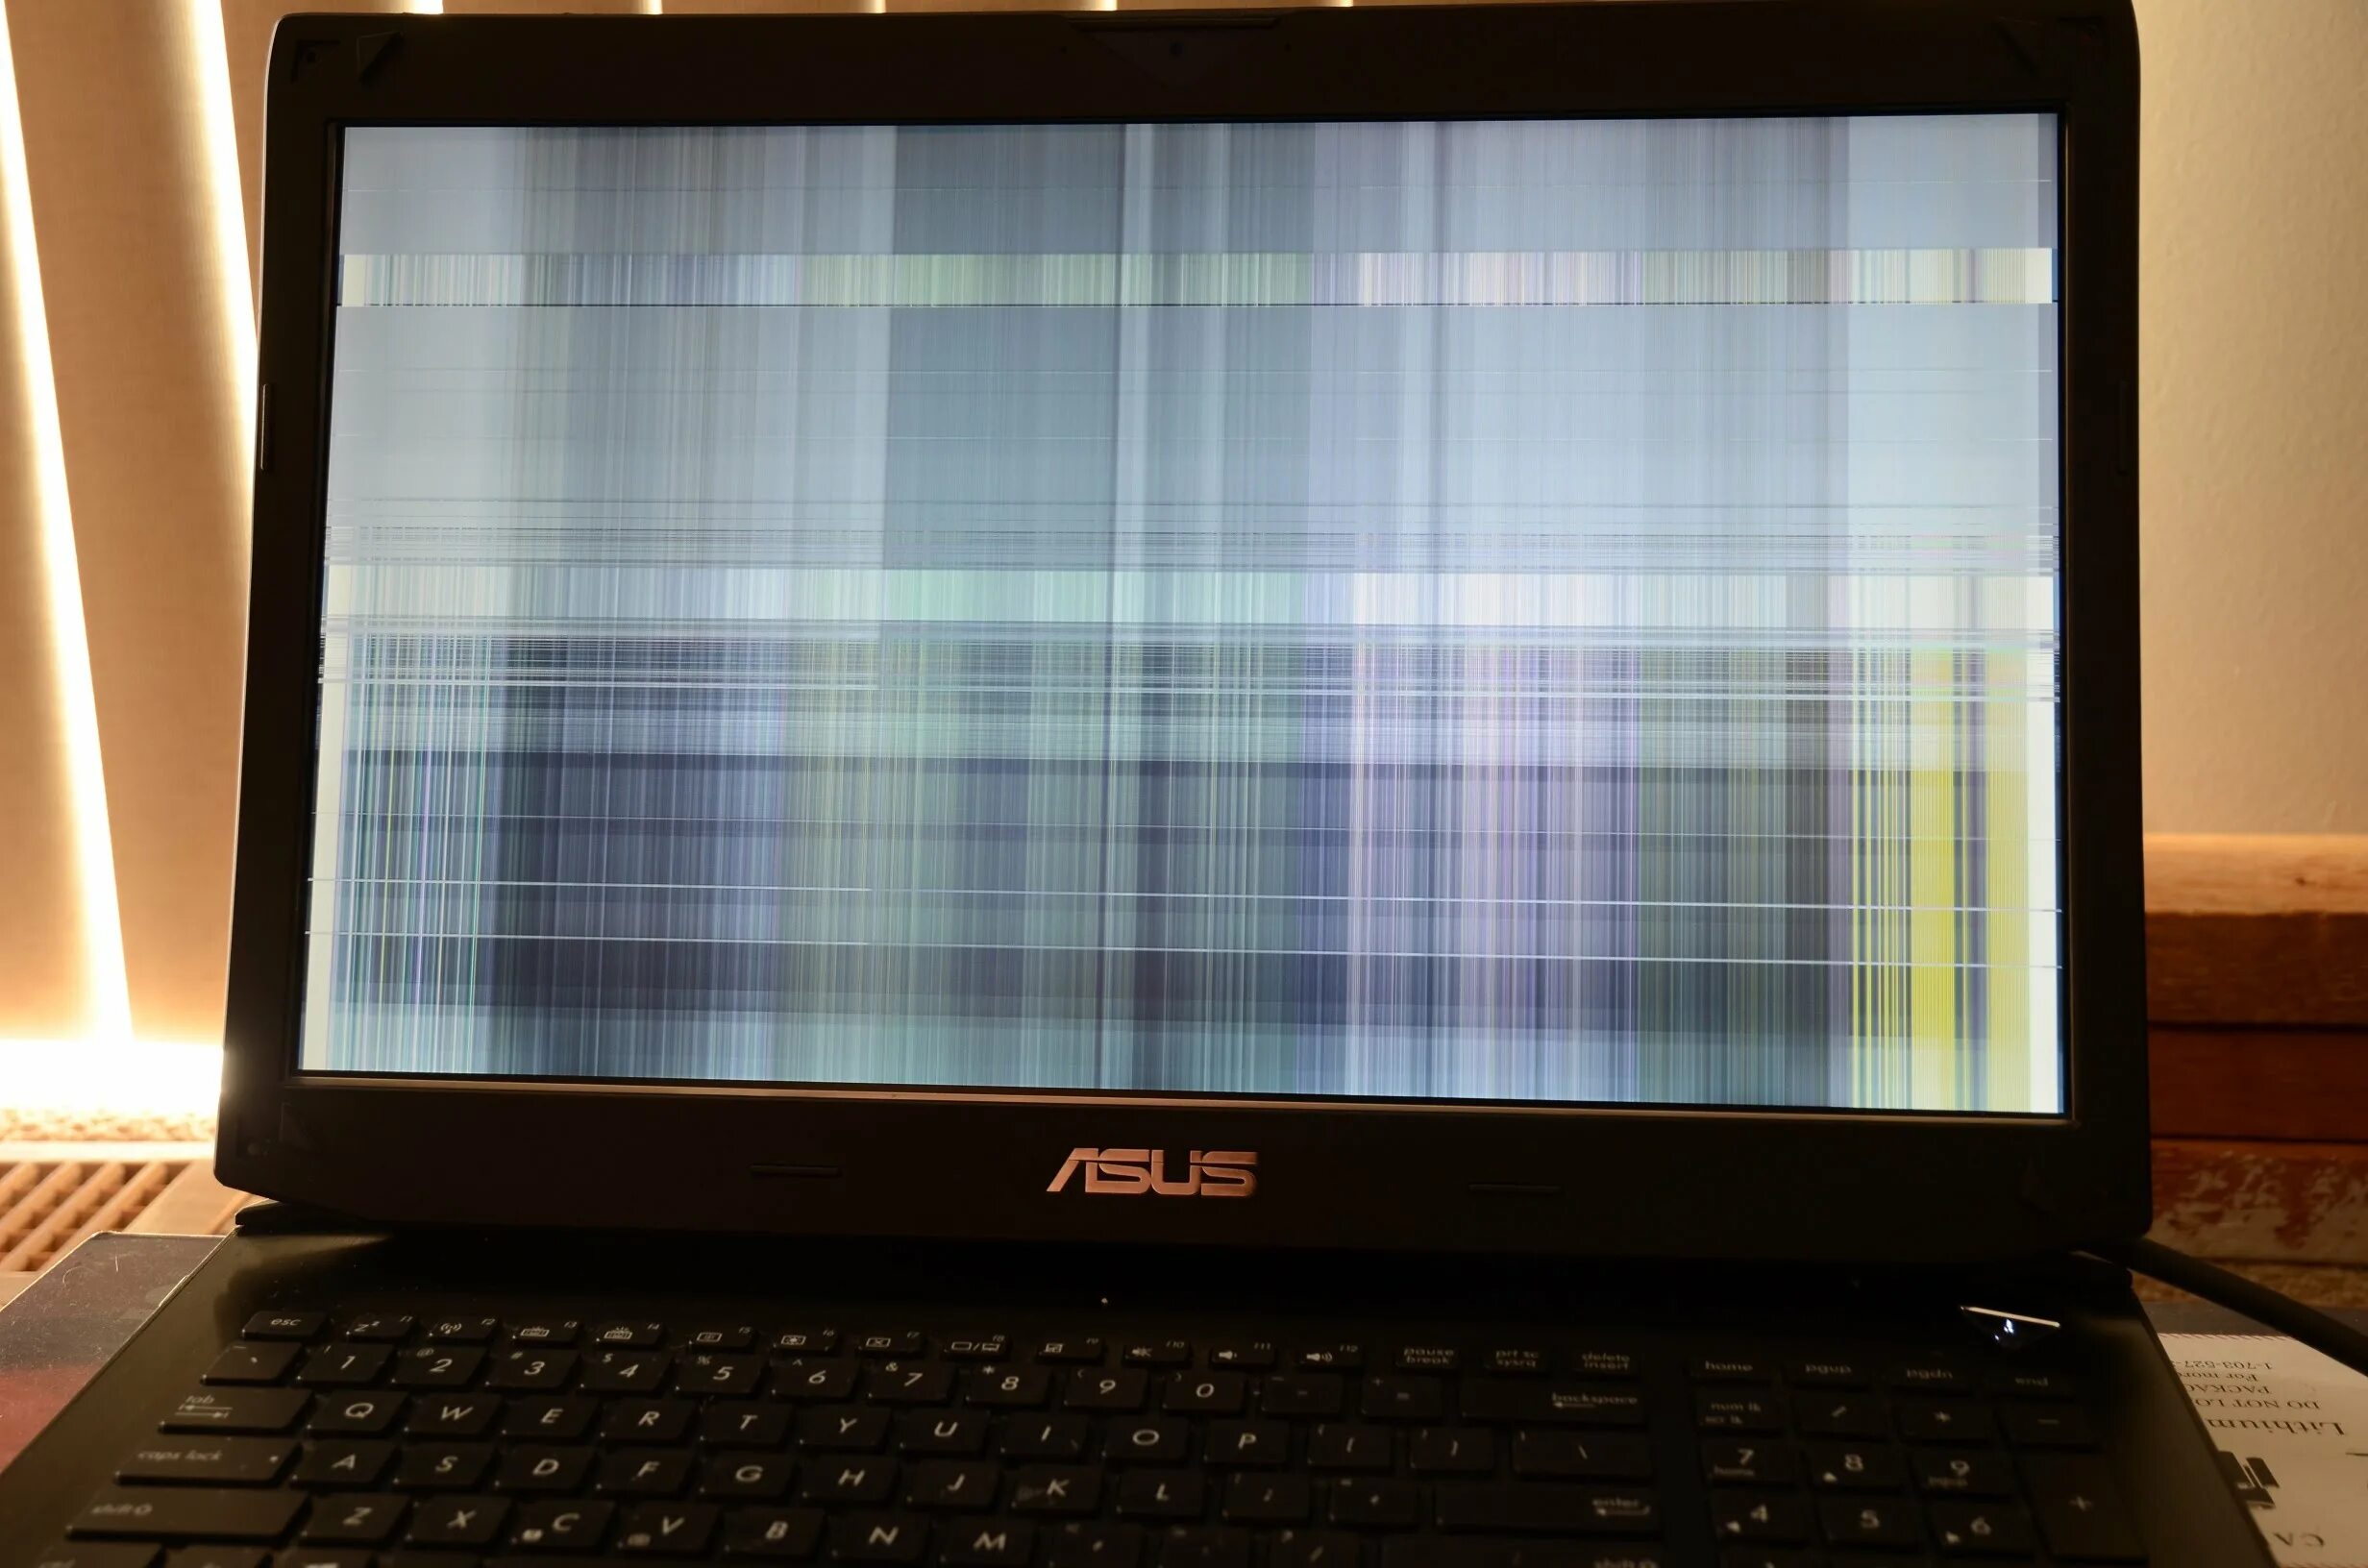 ASUS Laptop's Screen. Монитор ноутбука асус. Разбитый экран ноутбука. Ноутбук с разбитым экраном. Горизонтальный экран на ноутбуке